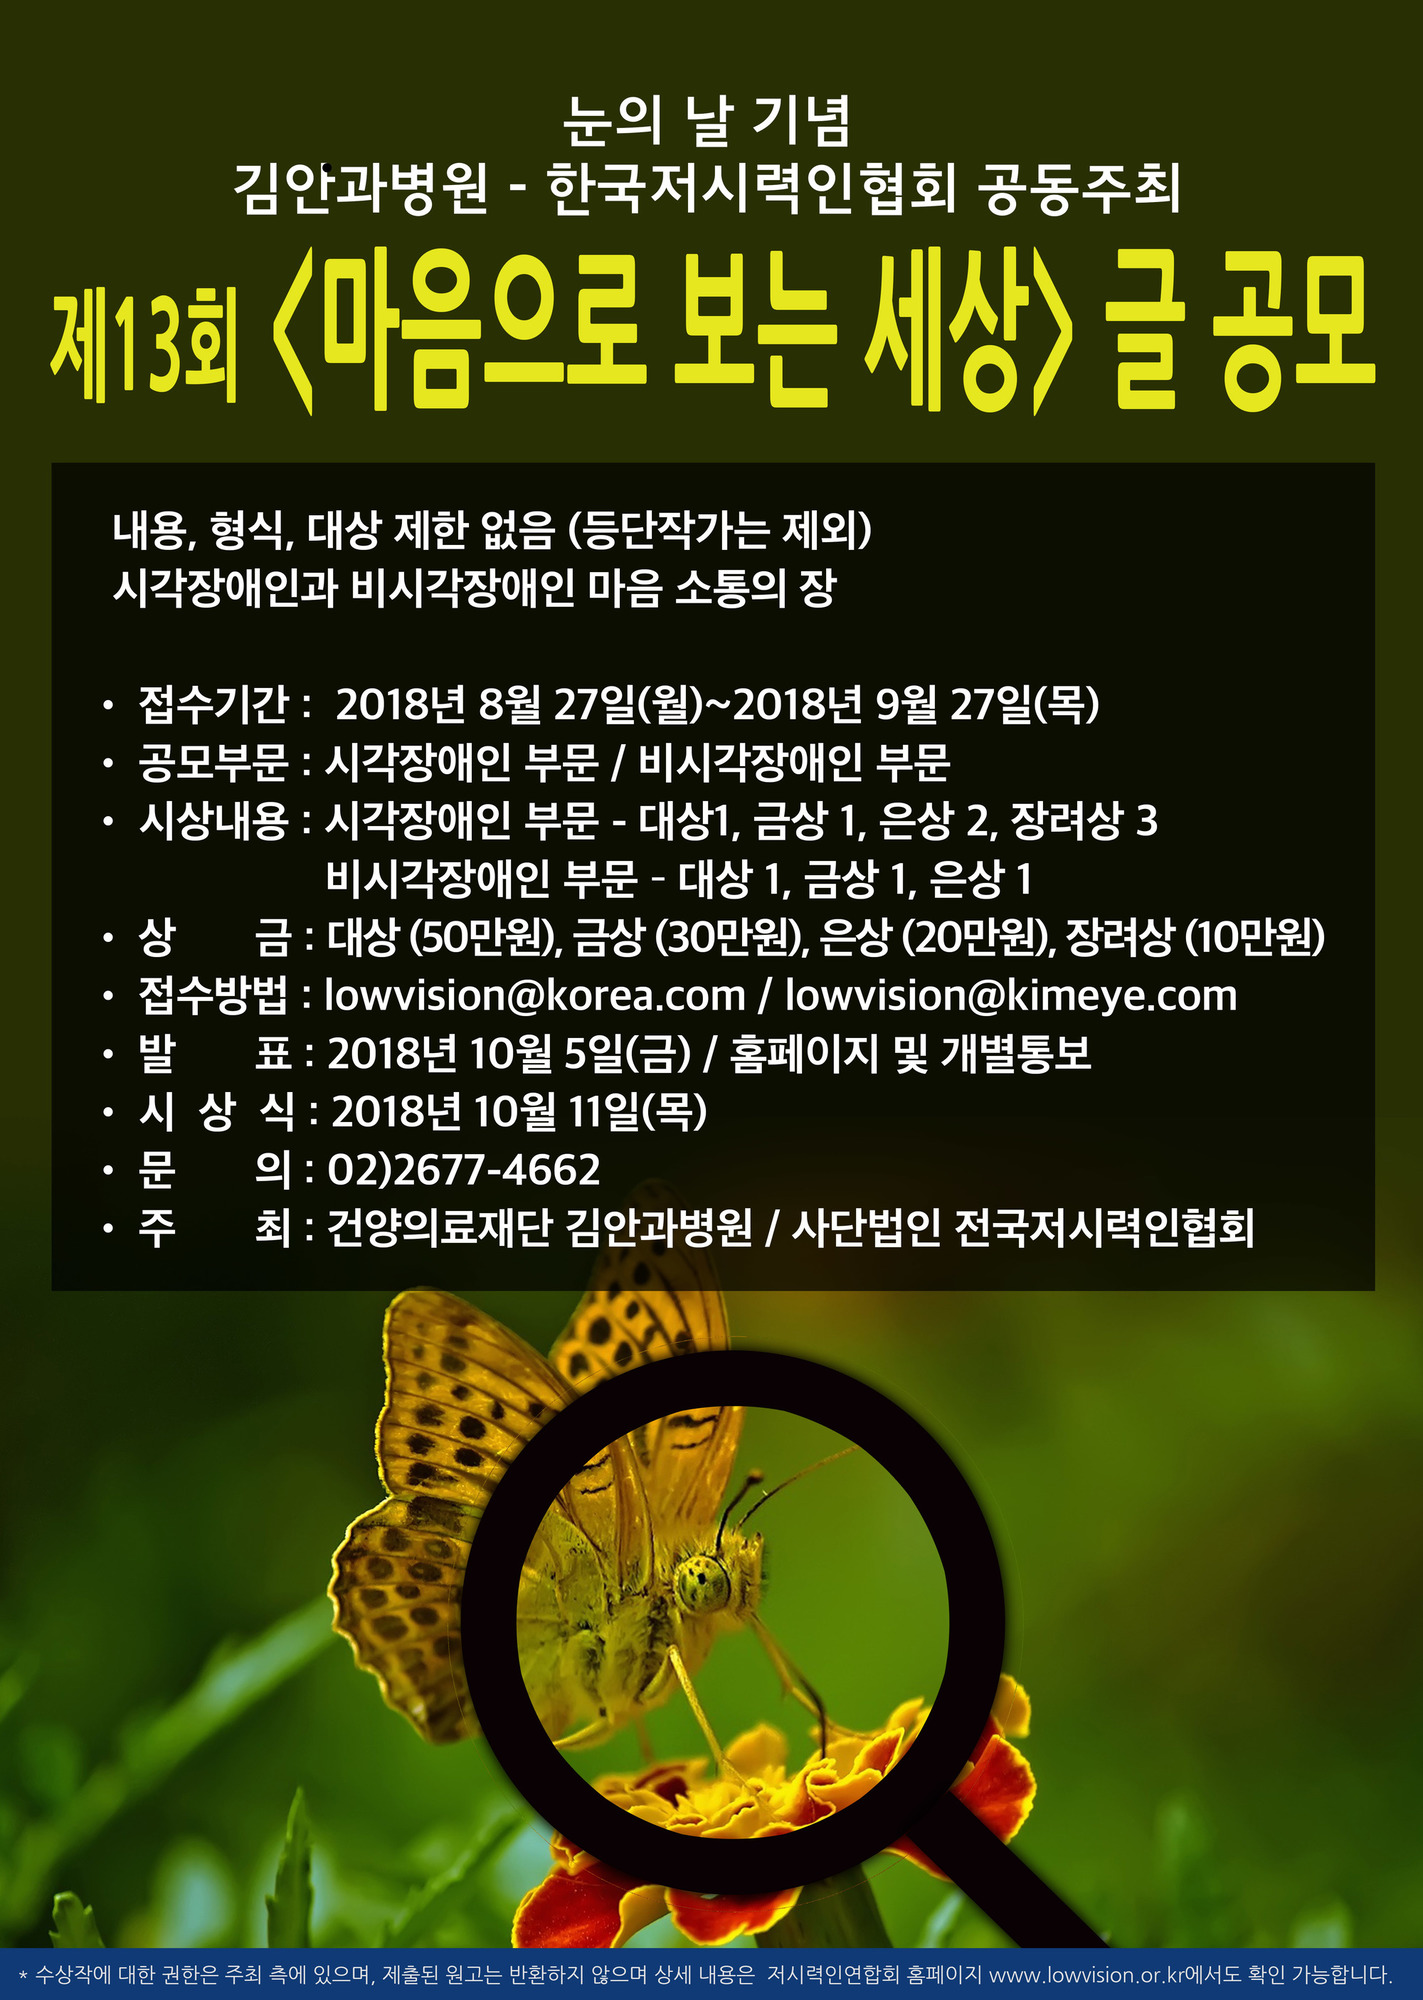 한국저시력인협회 제13회 마음으로 보는 세상 글 공모전 포스터